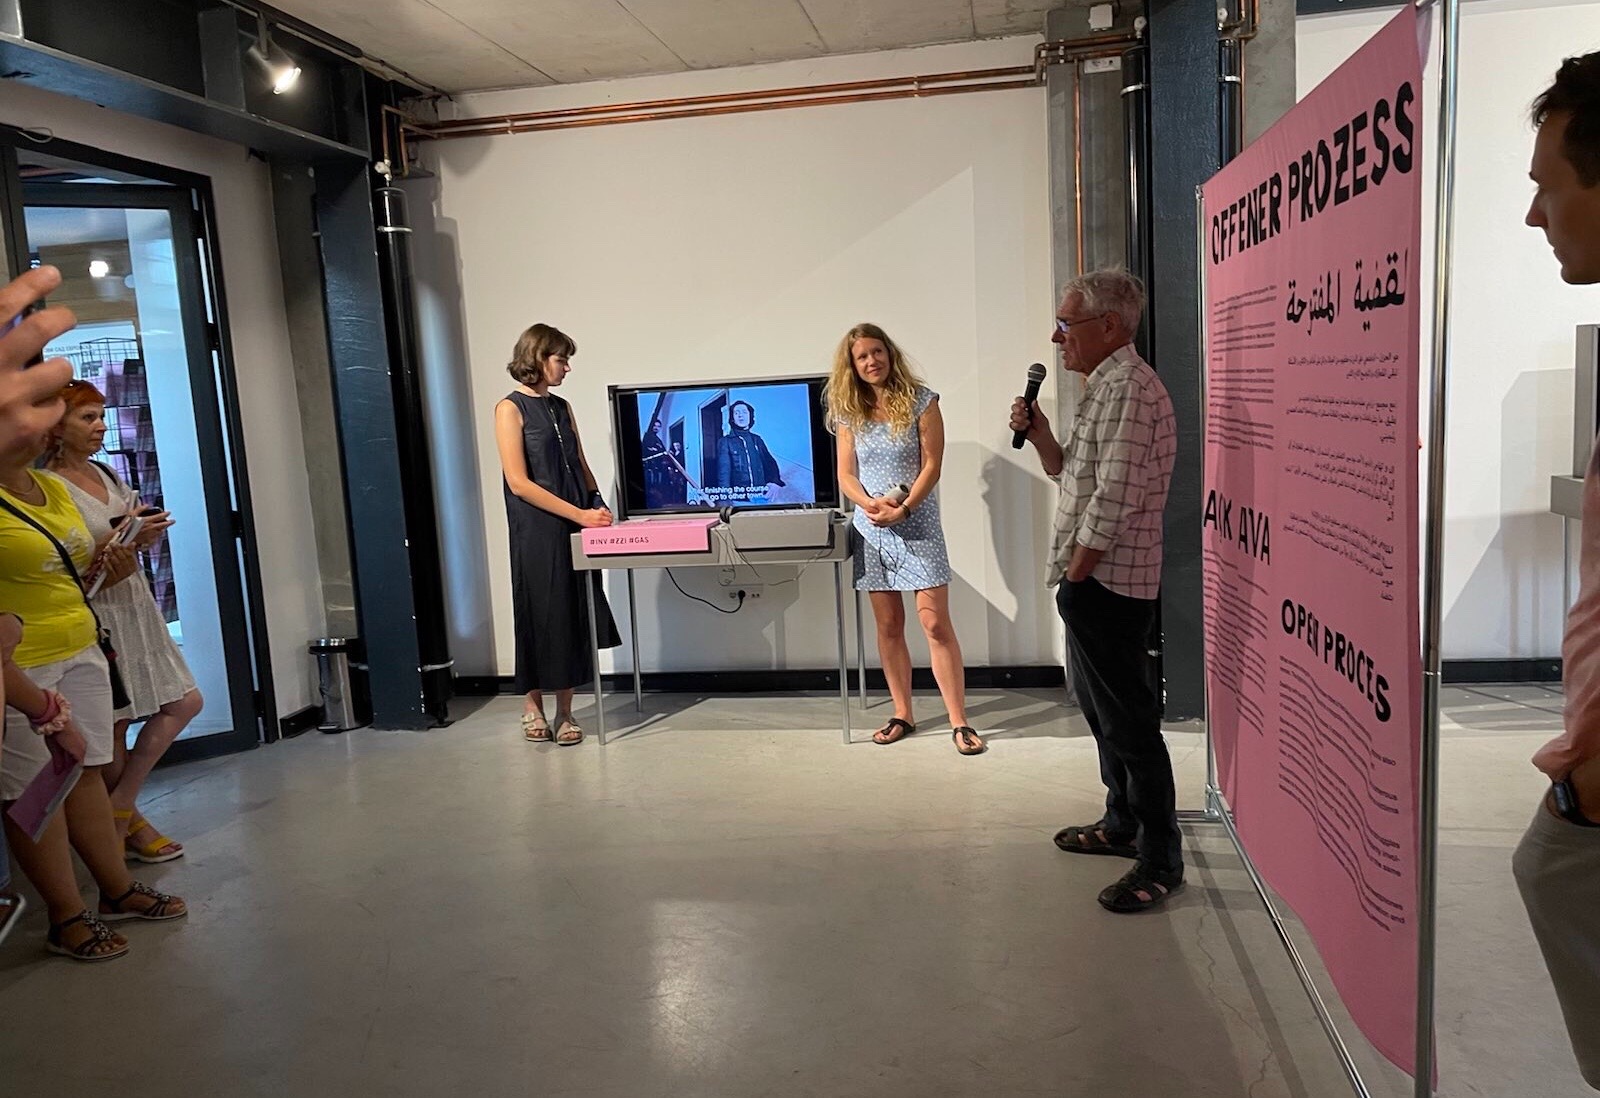 Der Filmemacher Želimir Žilnik spricht bei der Eröffnung der Ausstellung "Offener Prozess". Im Hintergrund läuft sein Kurzfilm "Inventur - Metzstraße 11" über das Leben der sogenannten Gastarbeiter*innen, der in der Ausstellung zu sehen ist.